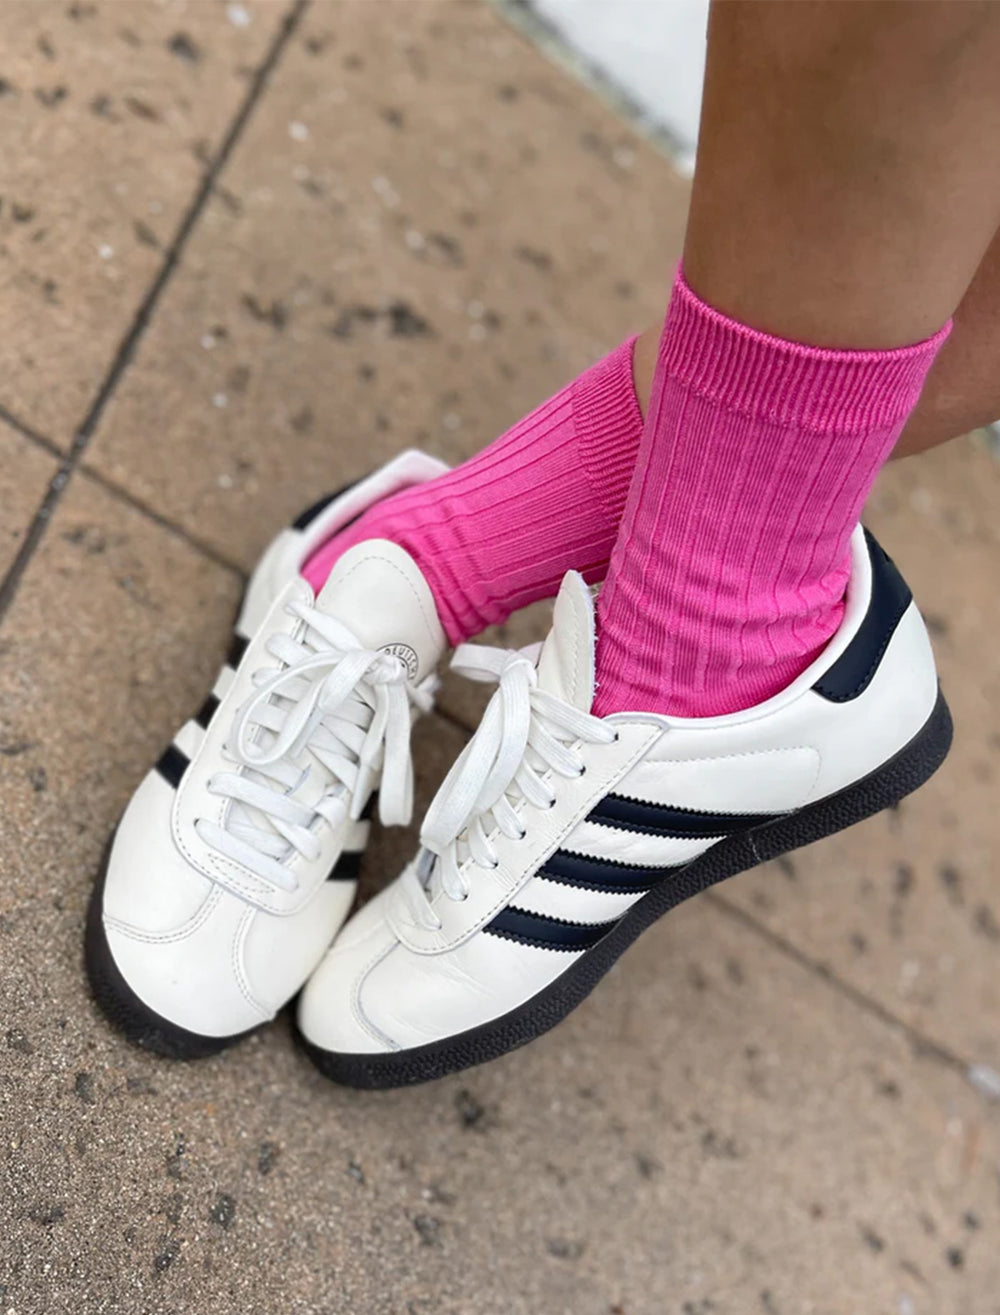 Model wearing Le Bon Shoppe's her socks in bright pink.